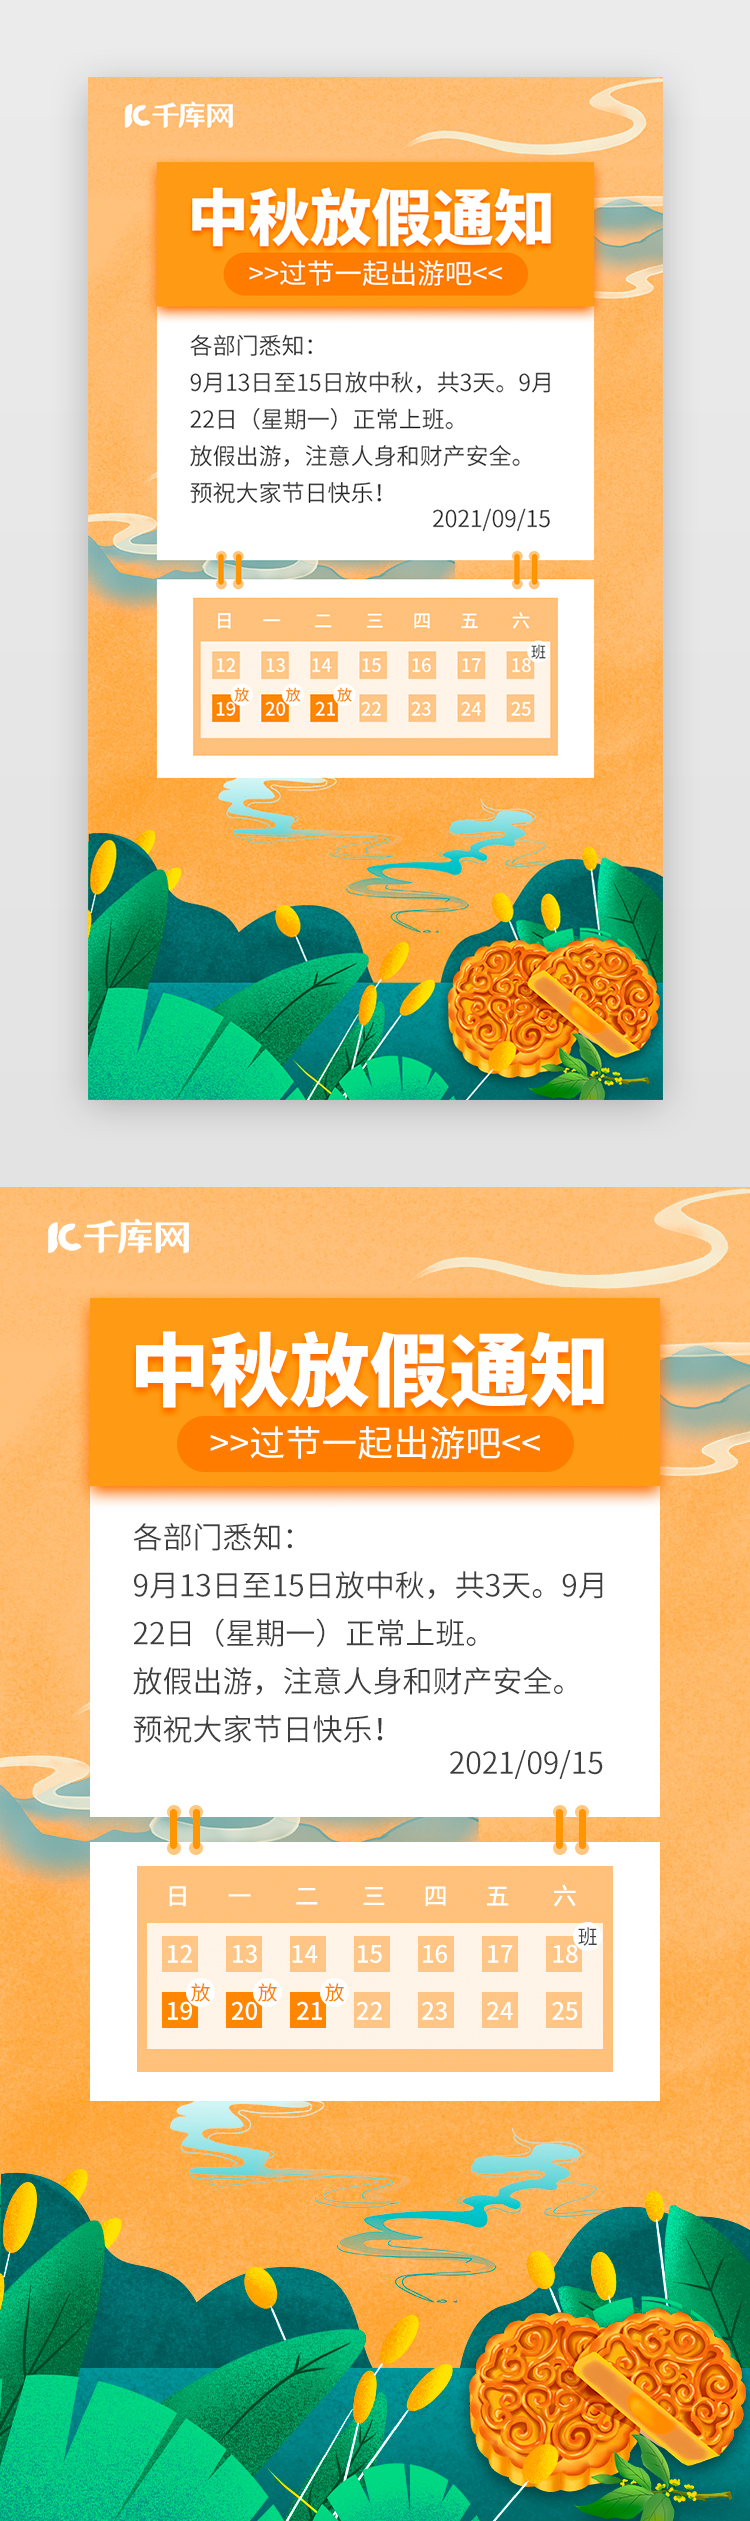 中秋放假通知手机海报插画橙色月饼图片